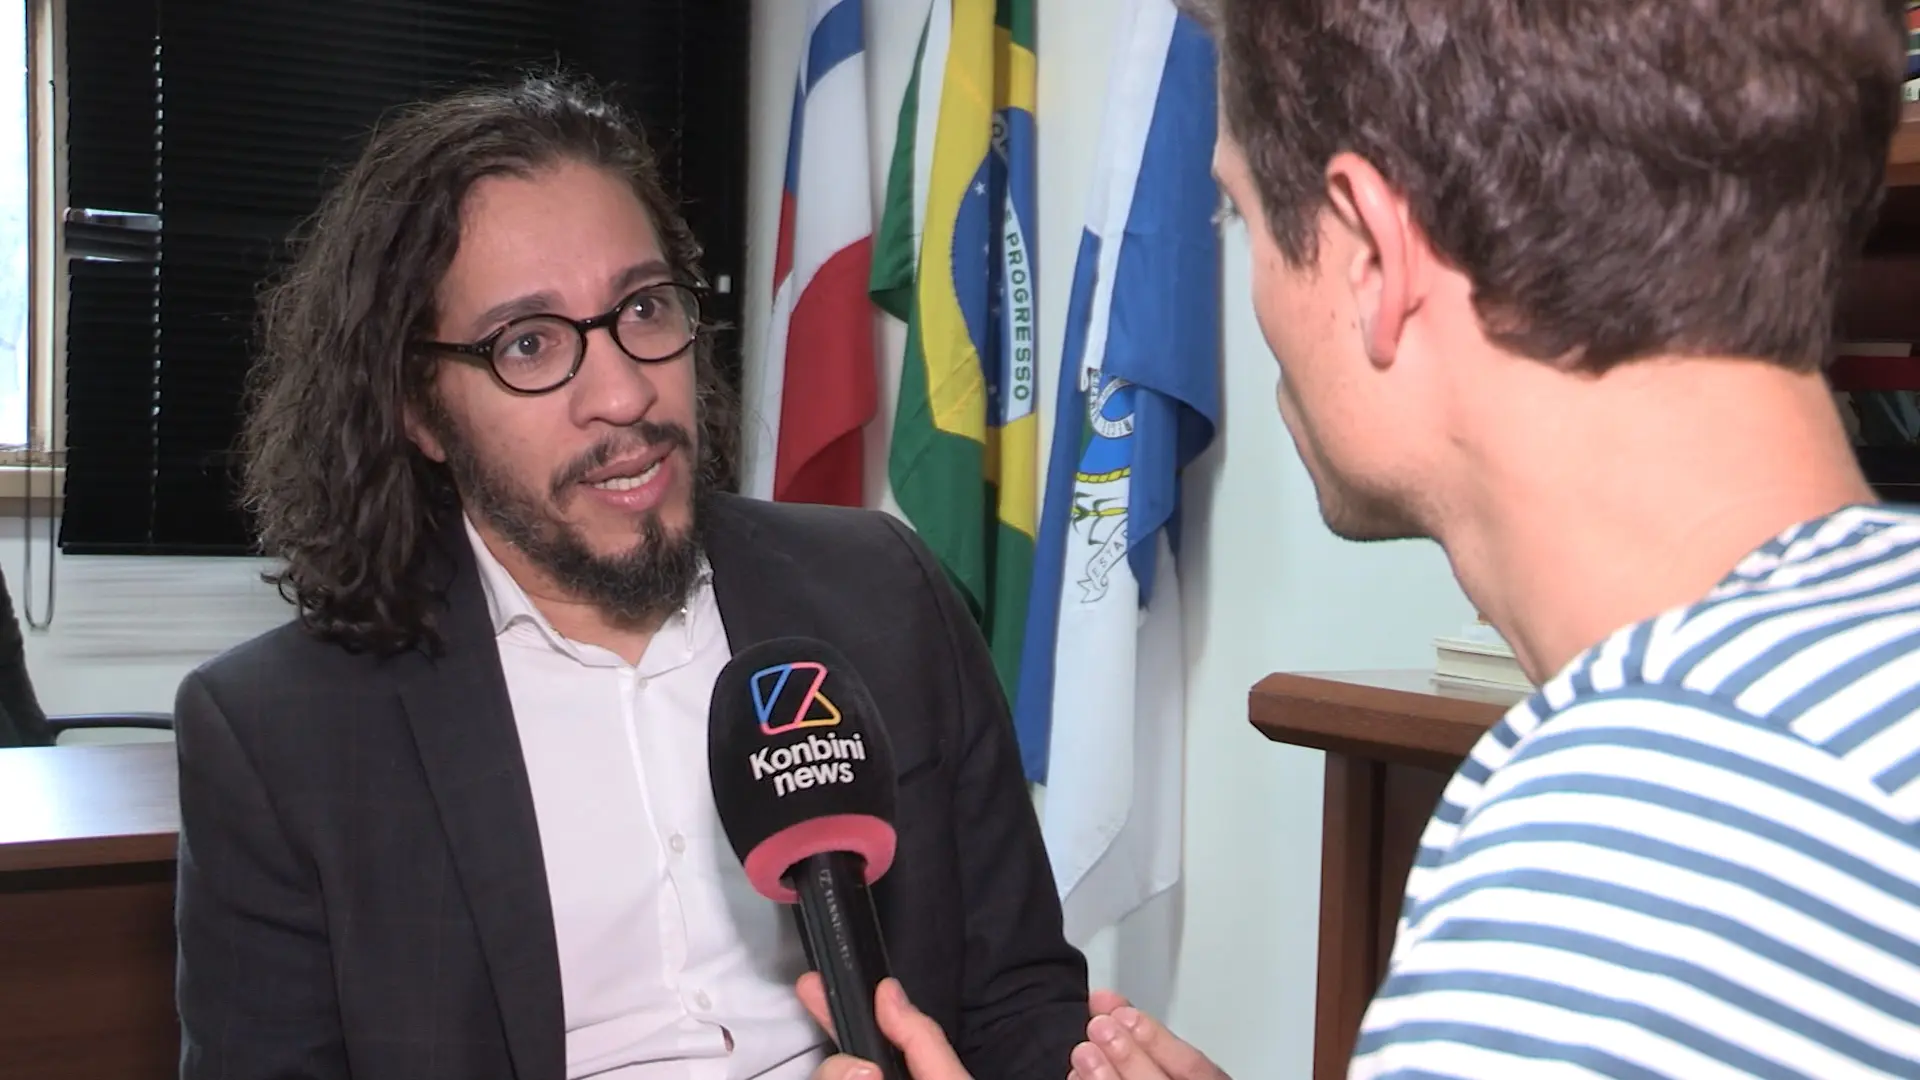 Vidéo : rencontre avec le député gay qui a craché sur Bolsonaro